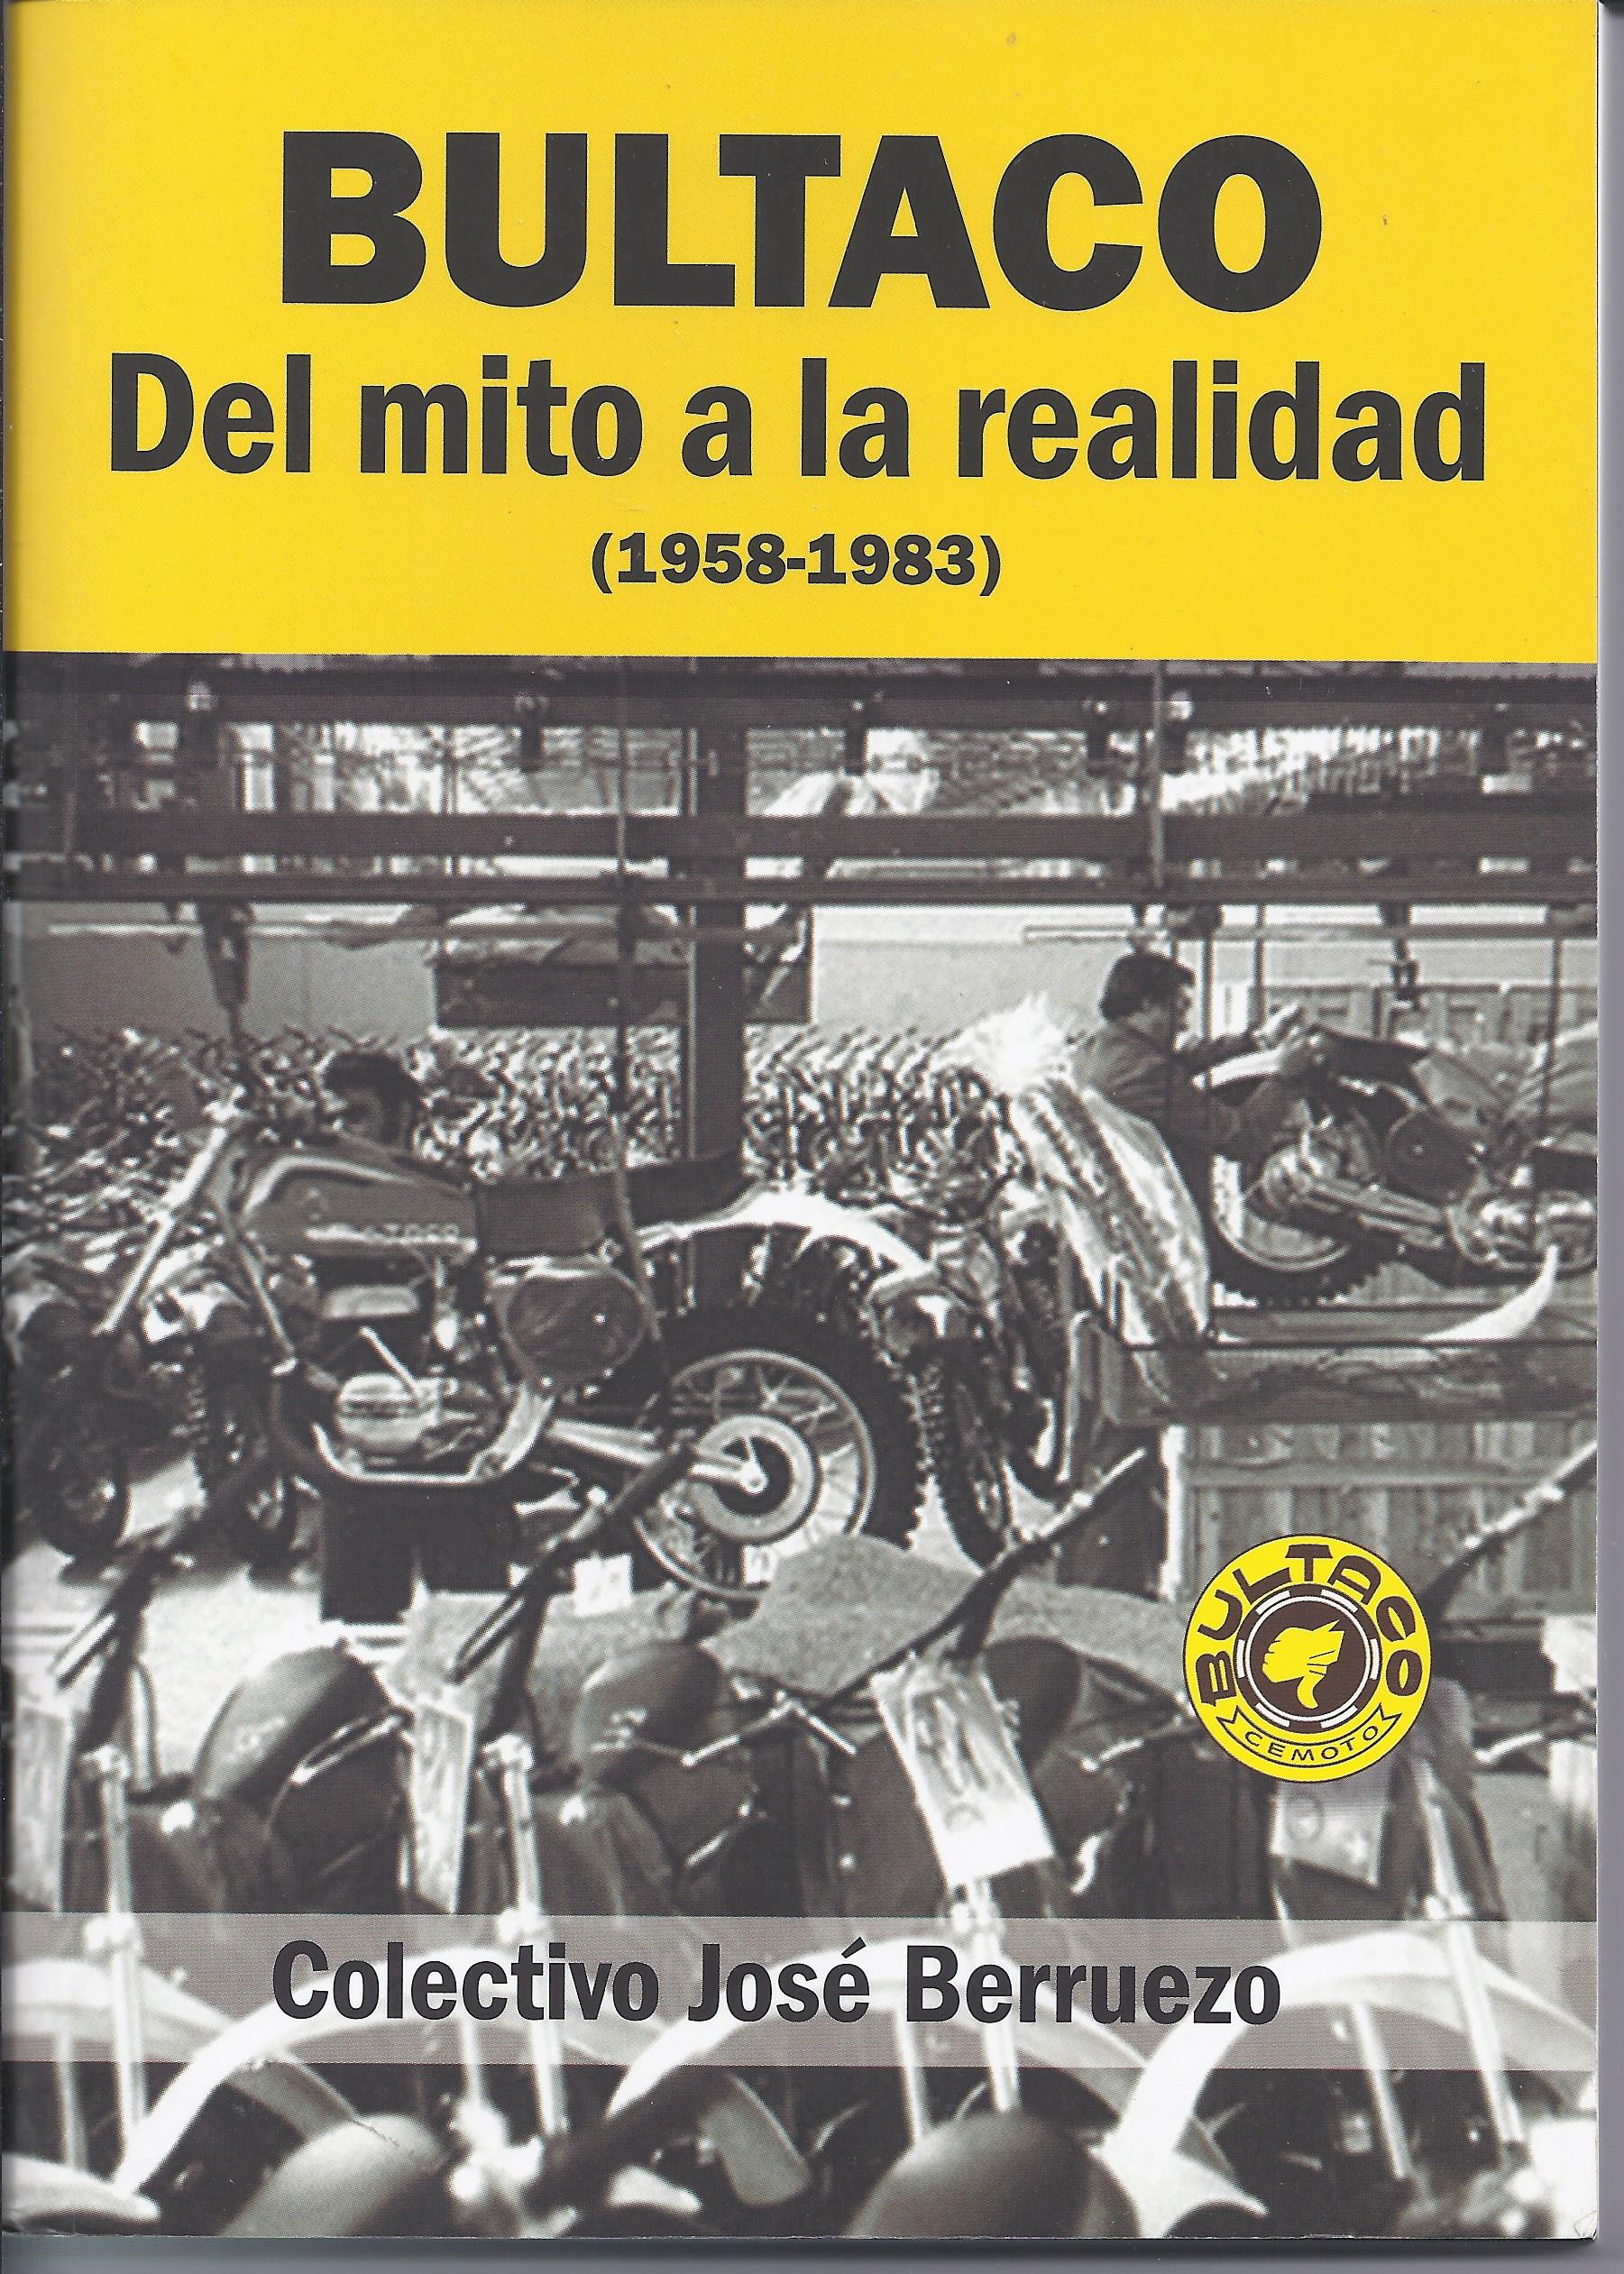 Rock para principiantes, uno de los libros de Miguel Amorós (historia sociopolítica del rock) Llibre_bultaco